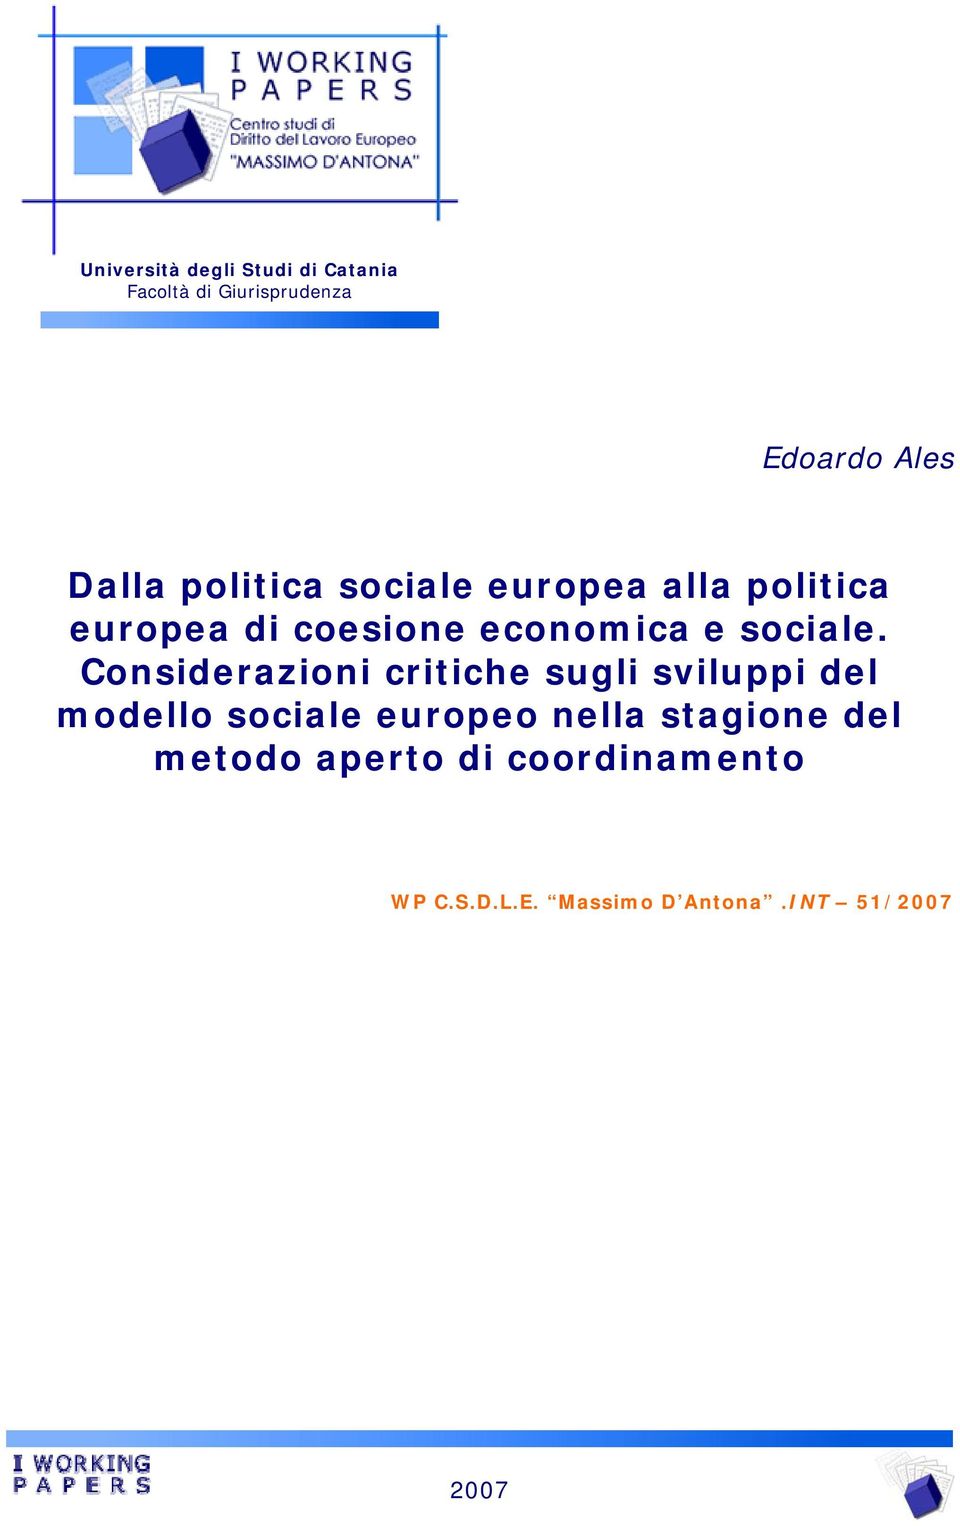 Considerazioni critiche sugli sviluppi del modello sociale europeo nella